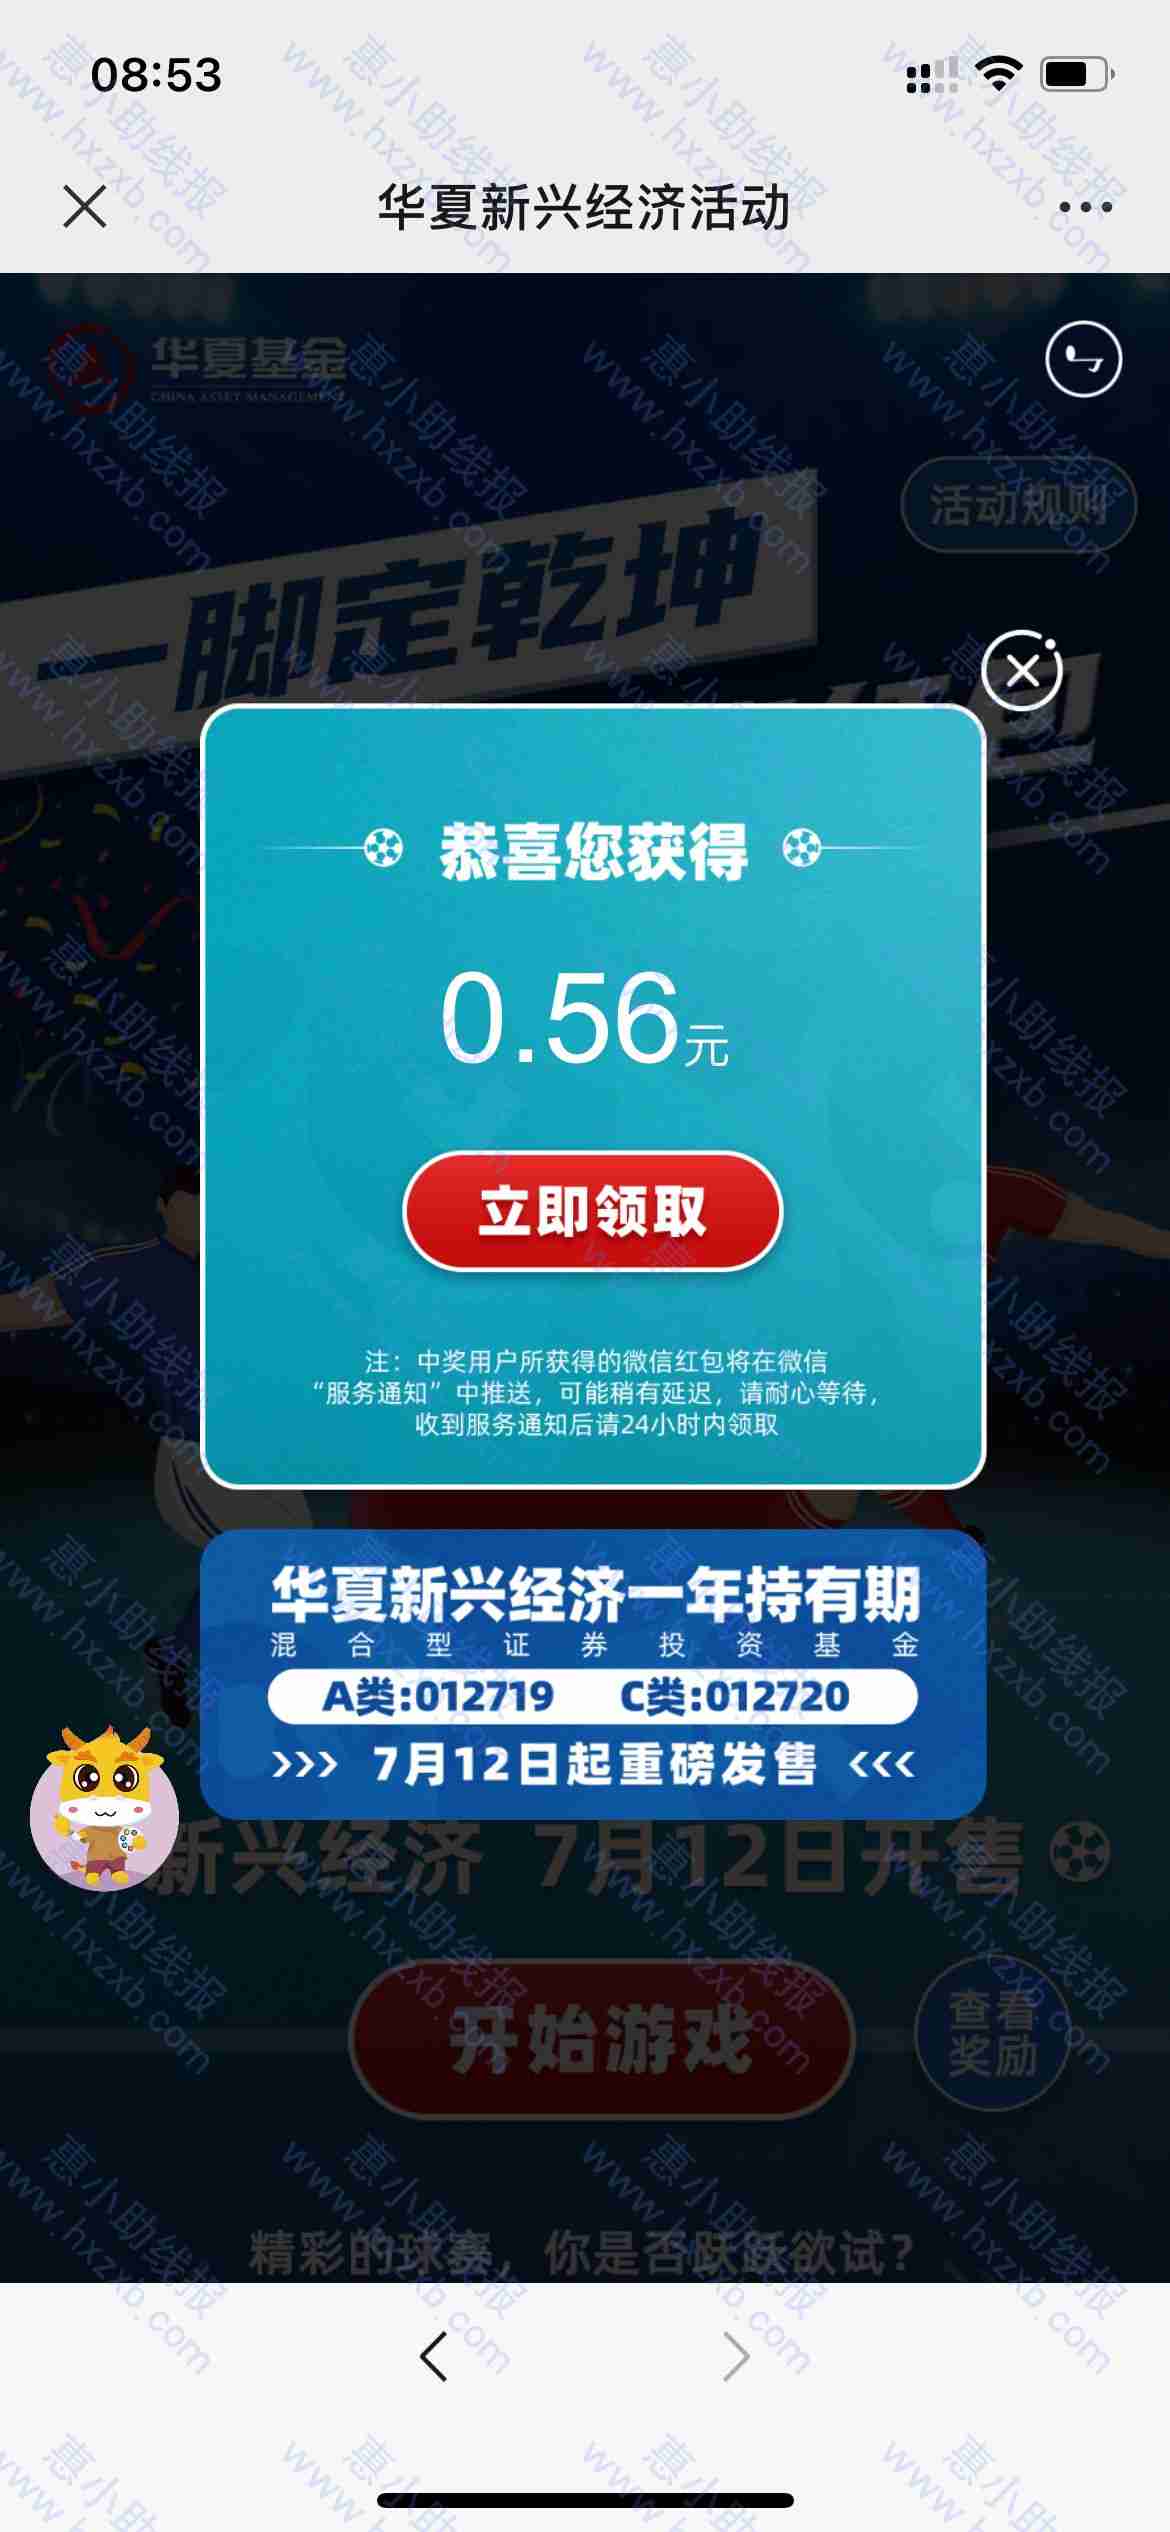 微信打开，华夏玩游戏抽$&答案：233，拿到反馈下$&http://